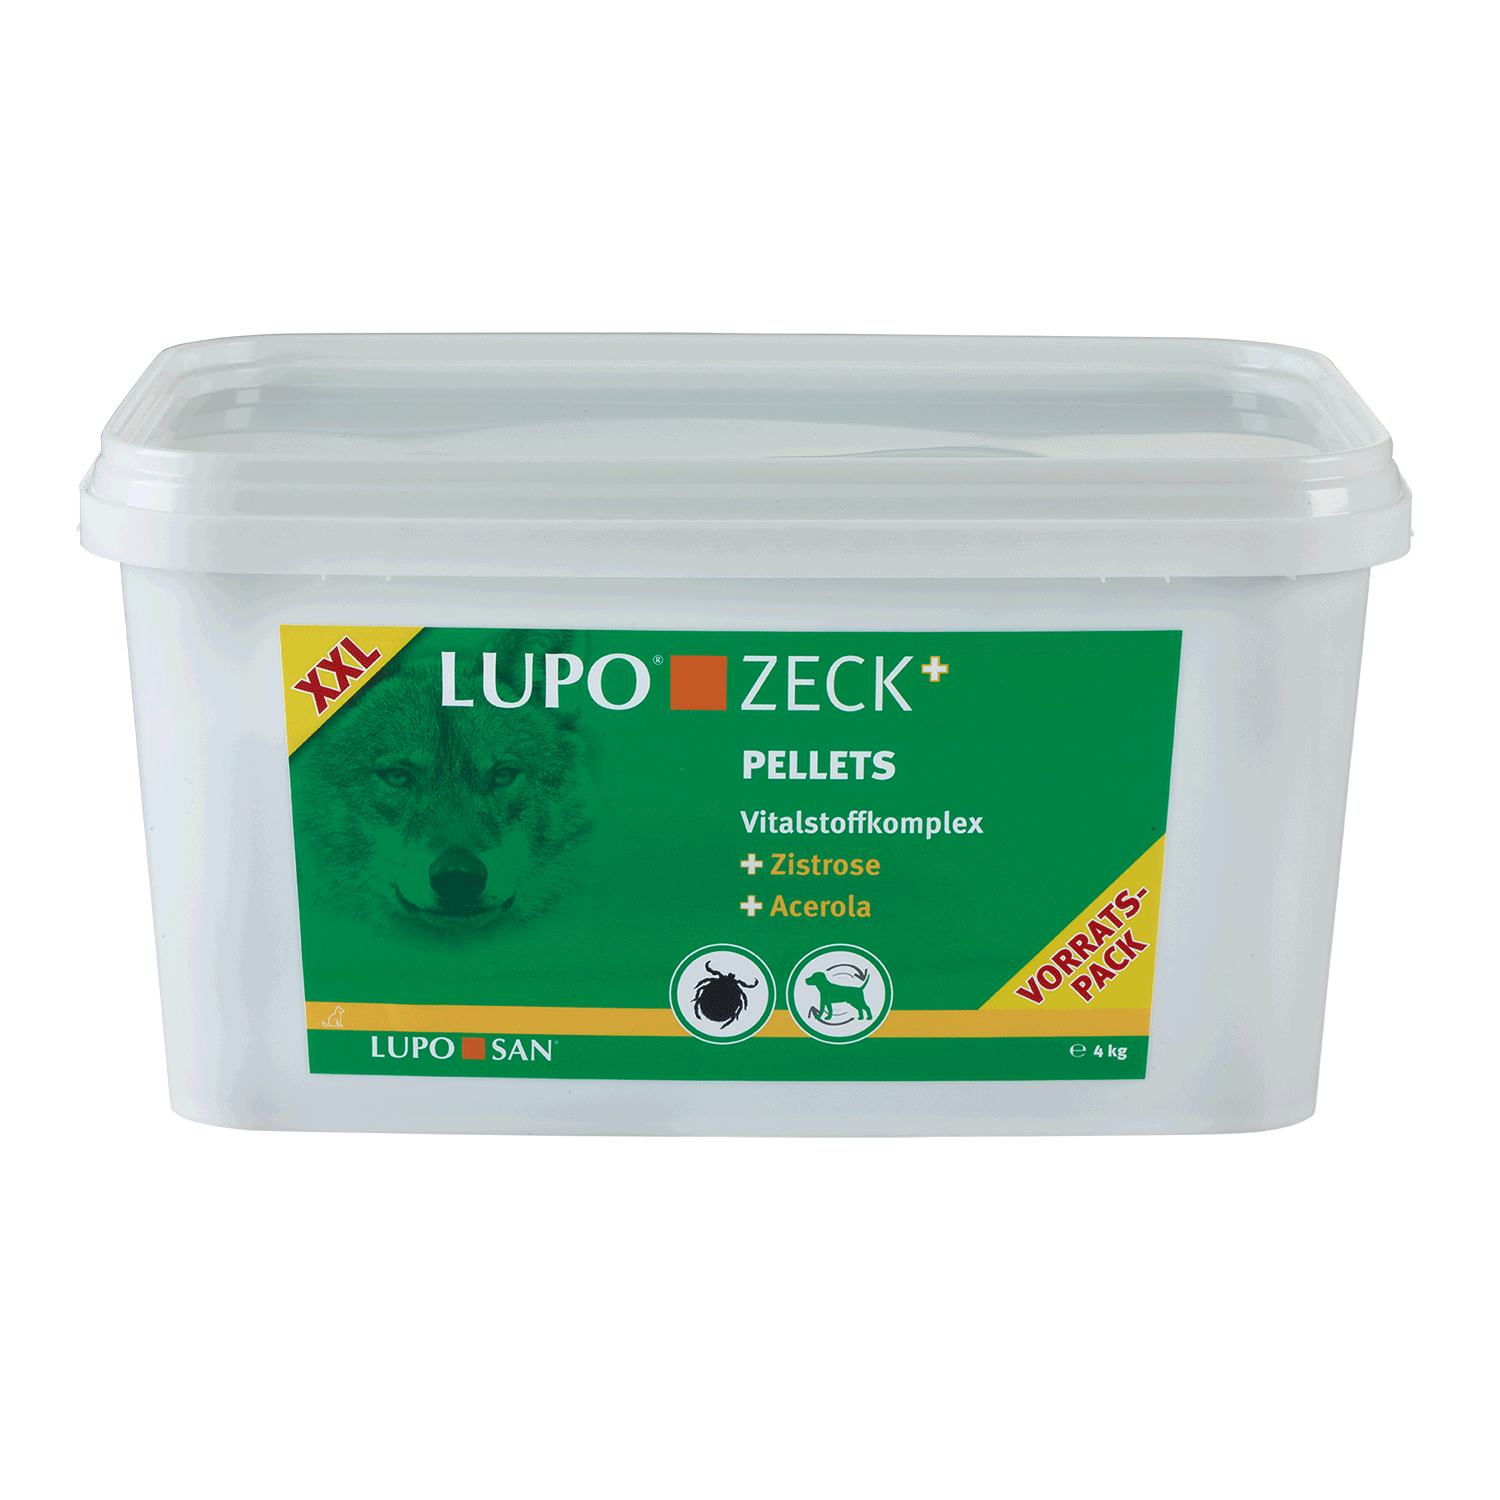 LUPO ZECK+ 4000 g